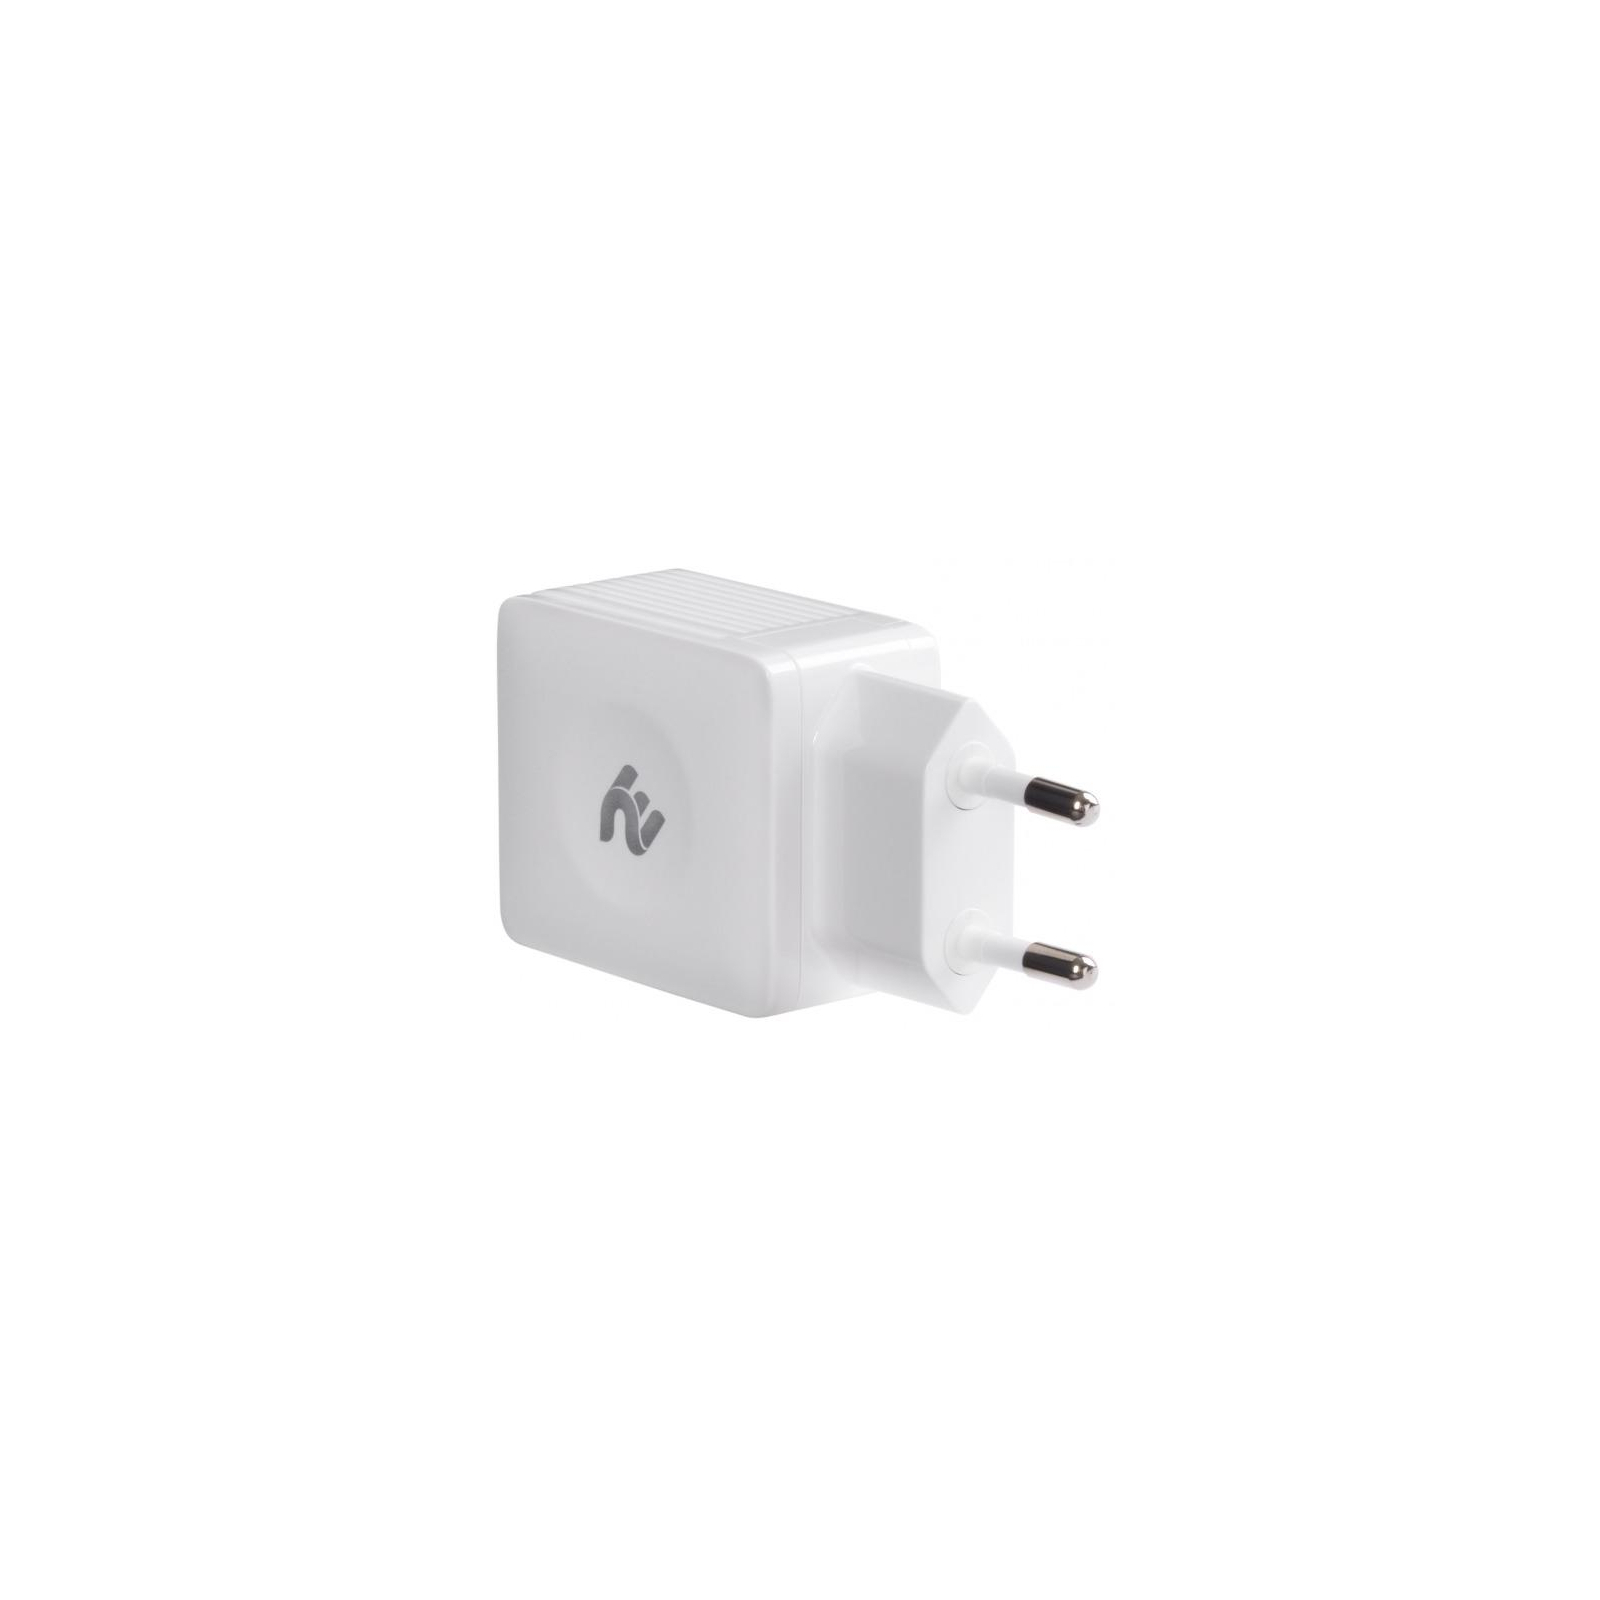 Зарядное устройство 2E Wall for 2 USB - DC5.0V/4.2 A, white (2E-WC4USB-W) изображение 2